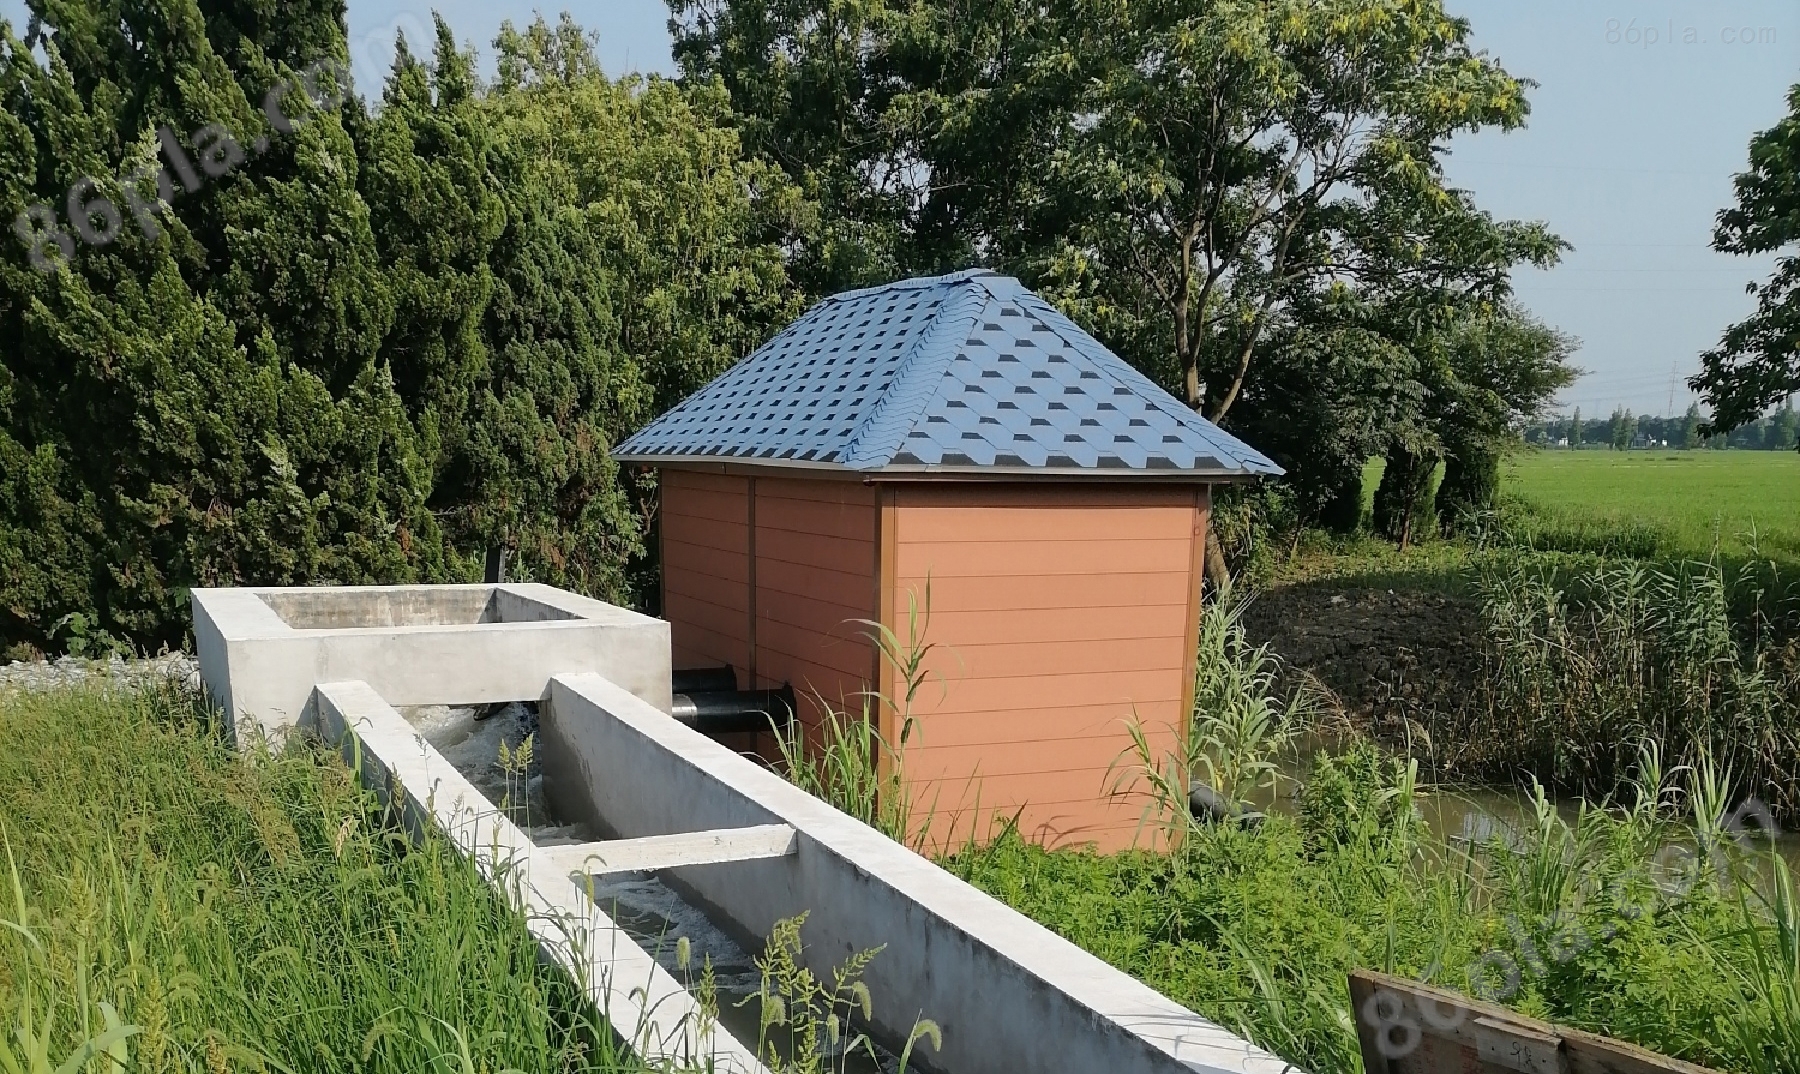 洁夫森农田灌溉泵房 为农村灌溉出一份力